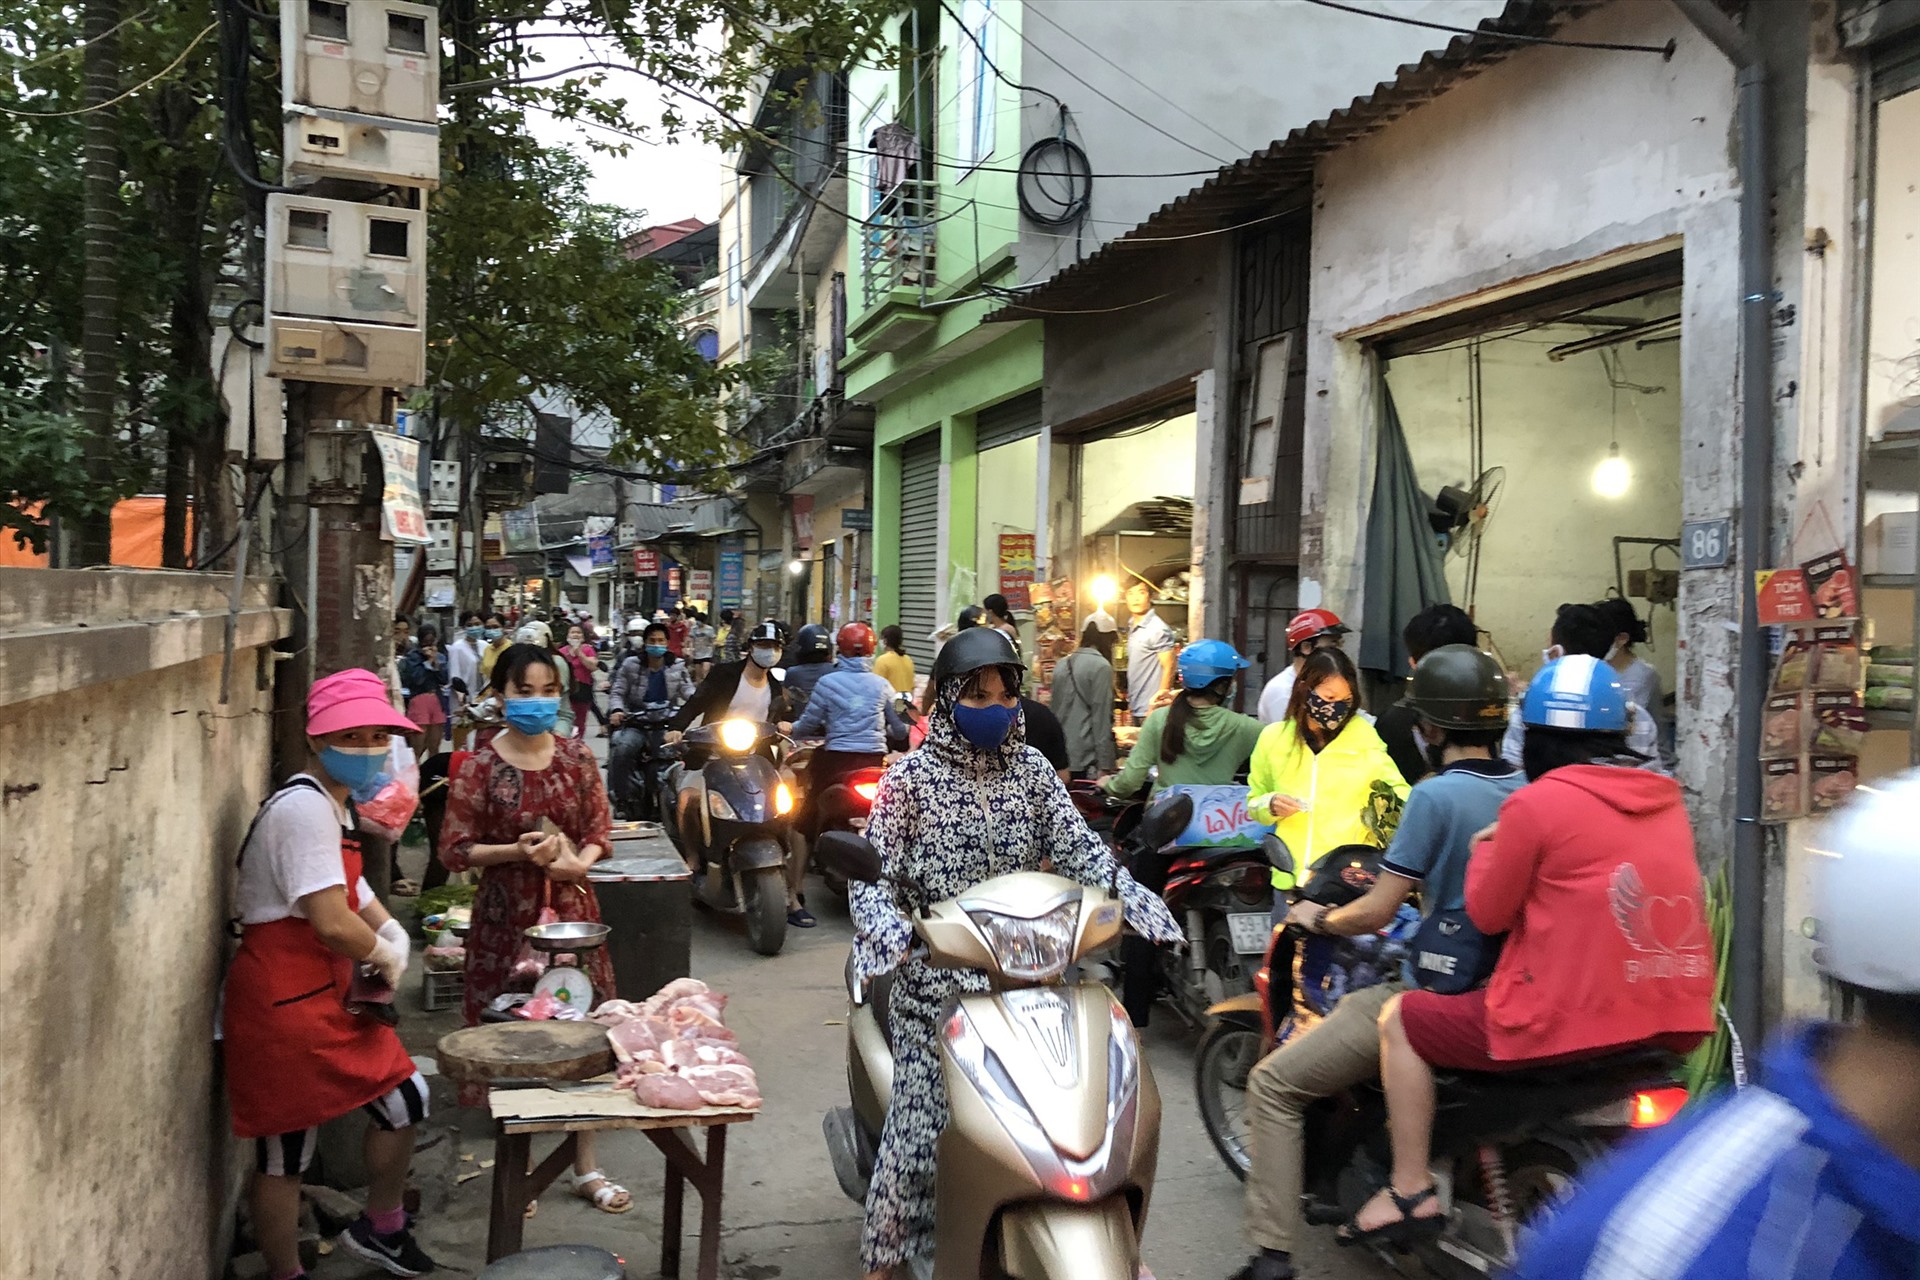 Theo ghi nhận, những ngày trở lại đây, người dân Hà Nội bắt đầu đổ ra đường đông hơn. Cùng với đó là việc nhiều hàng quán lách luật để hoạt động “chui“, hoặc trá hình dưới hình thức bán online.